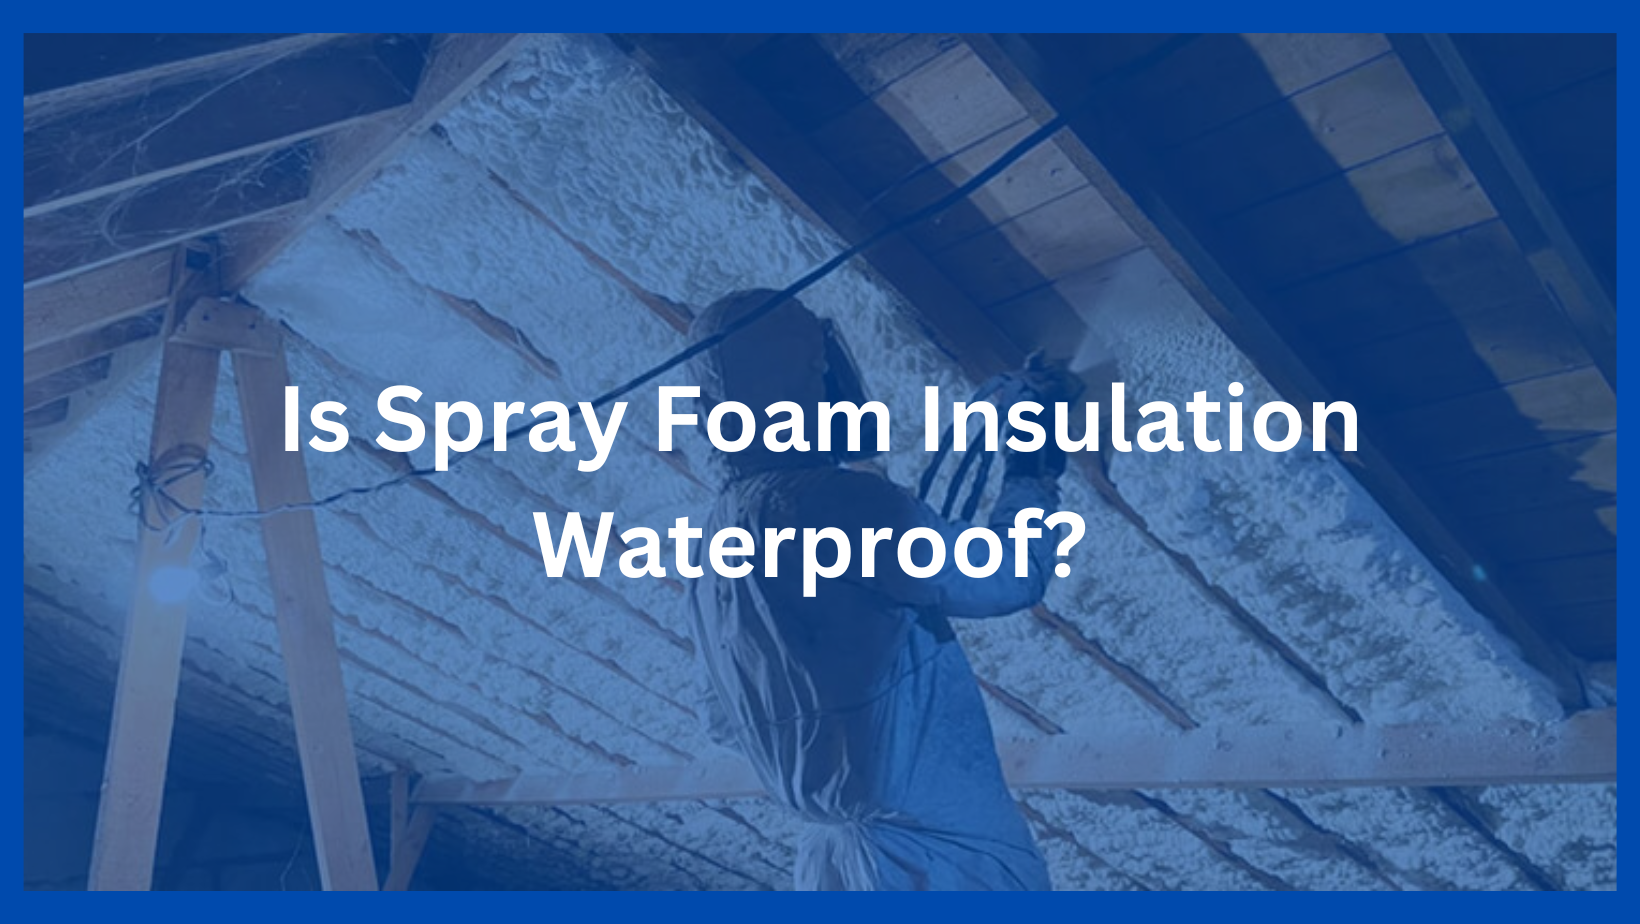 spray foam insulation waterproof